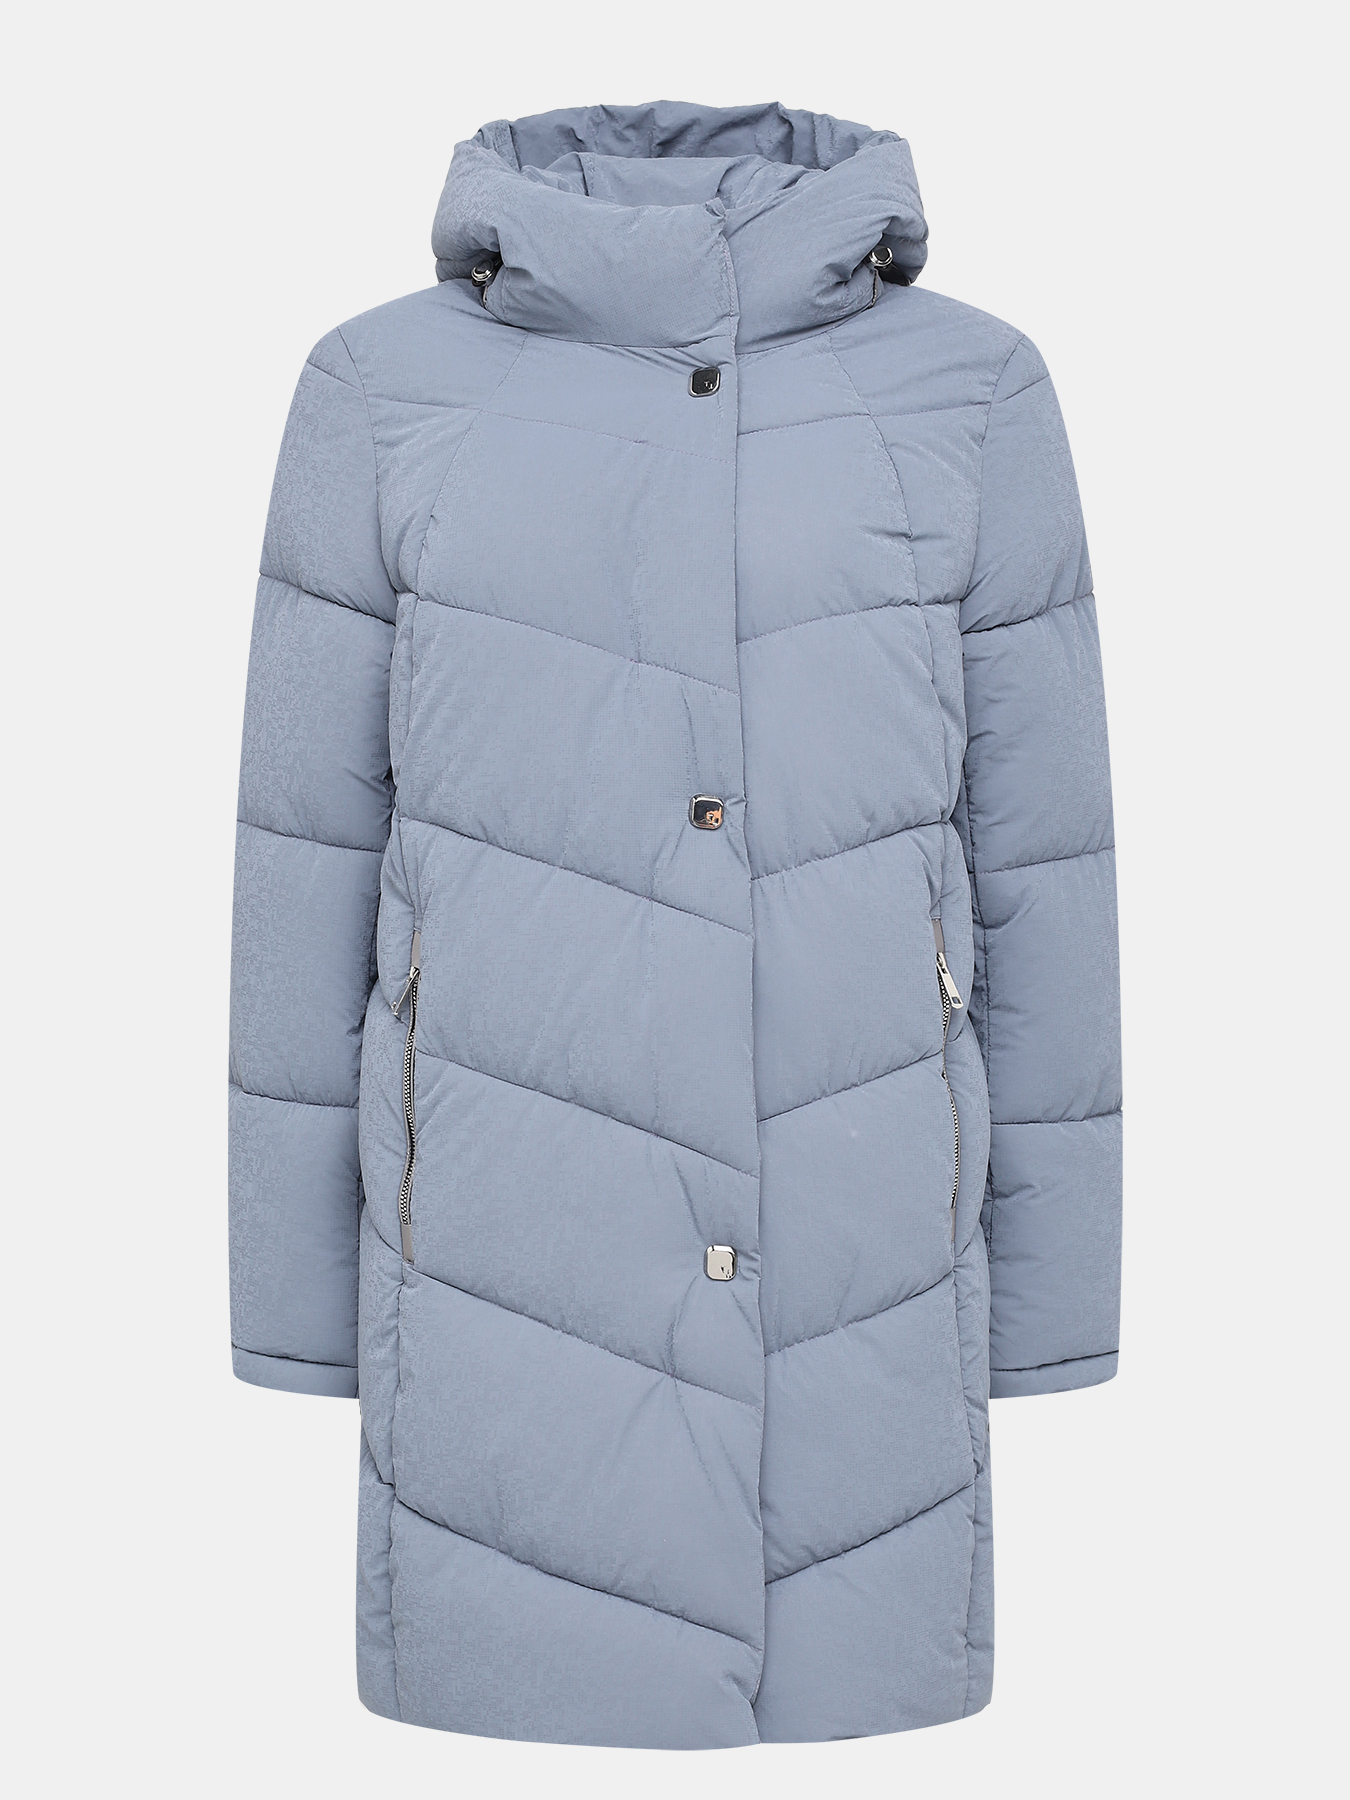 Пальто зимнее Maritta 433624-024, цвет голубой, размер 52